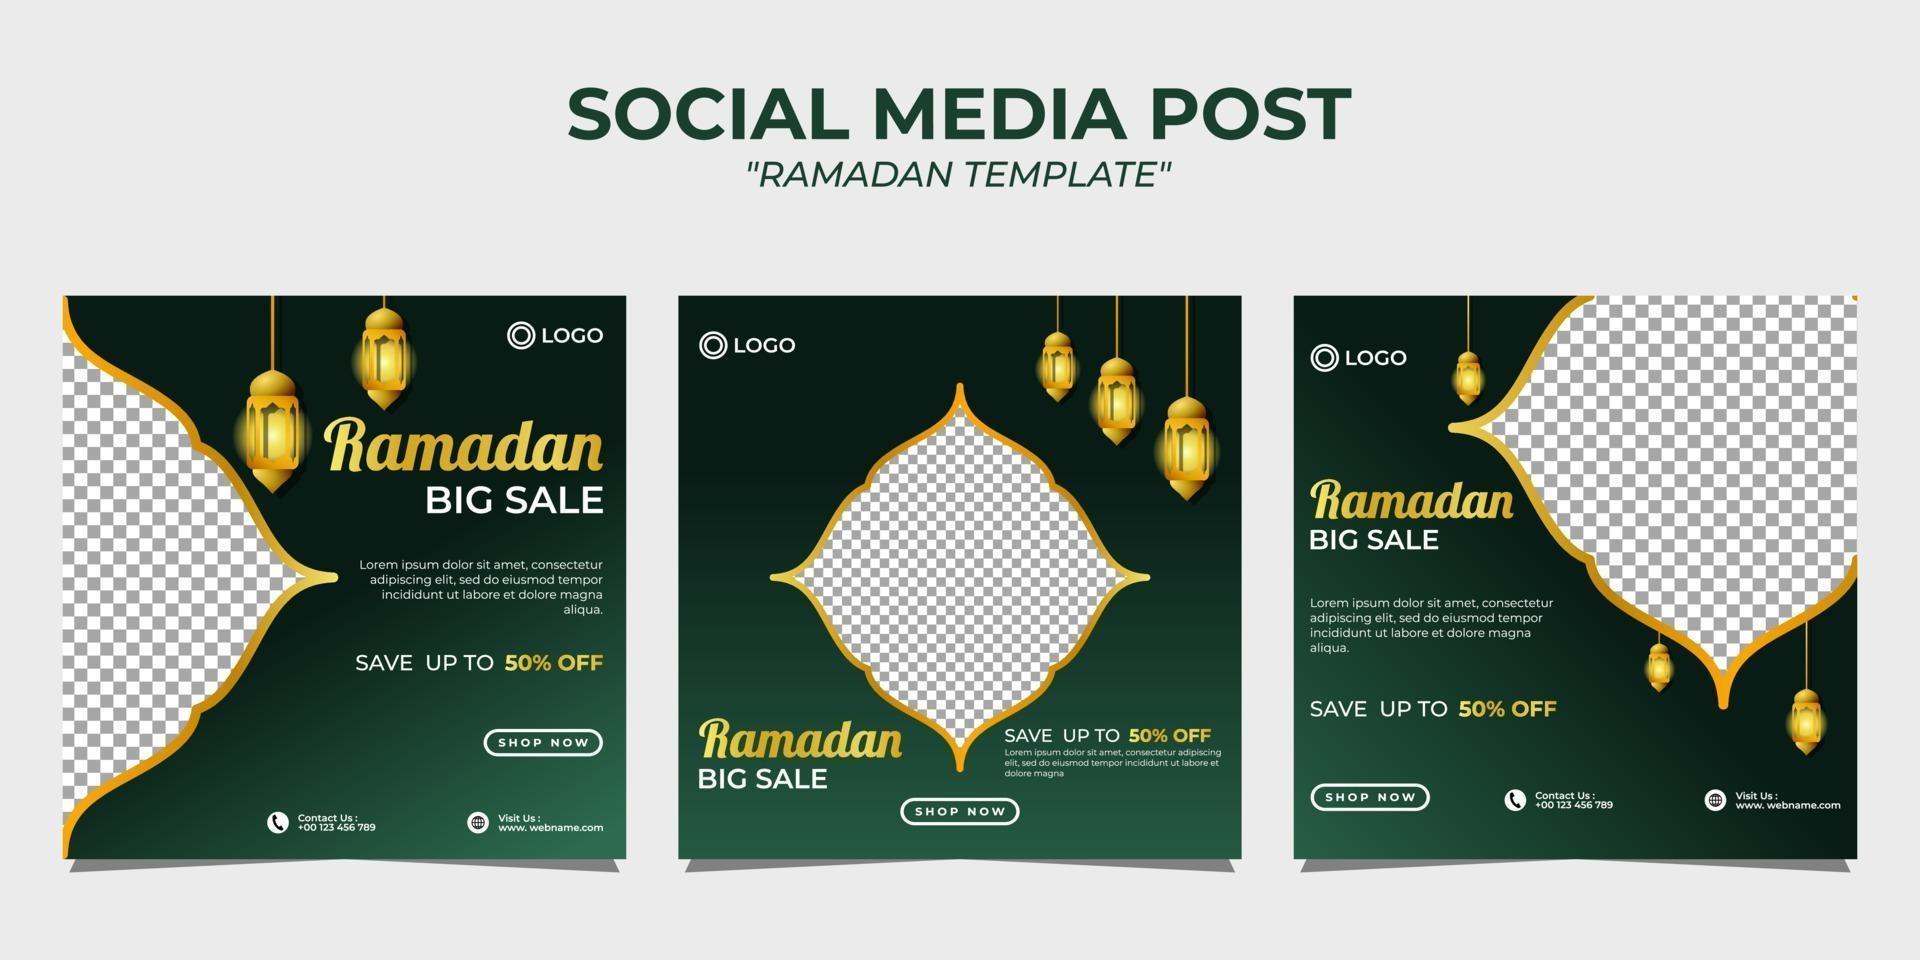 Ramadan social media post template vector